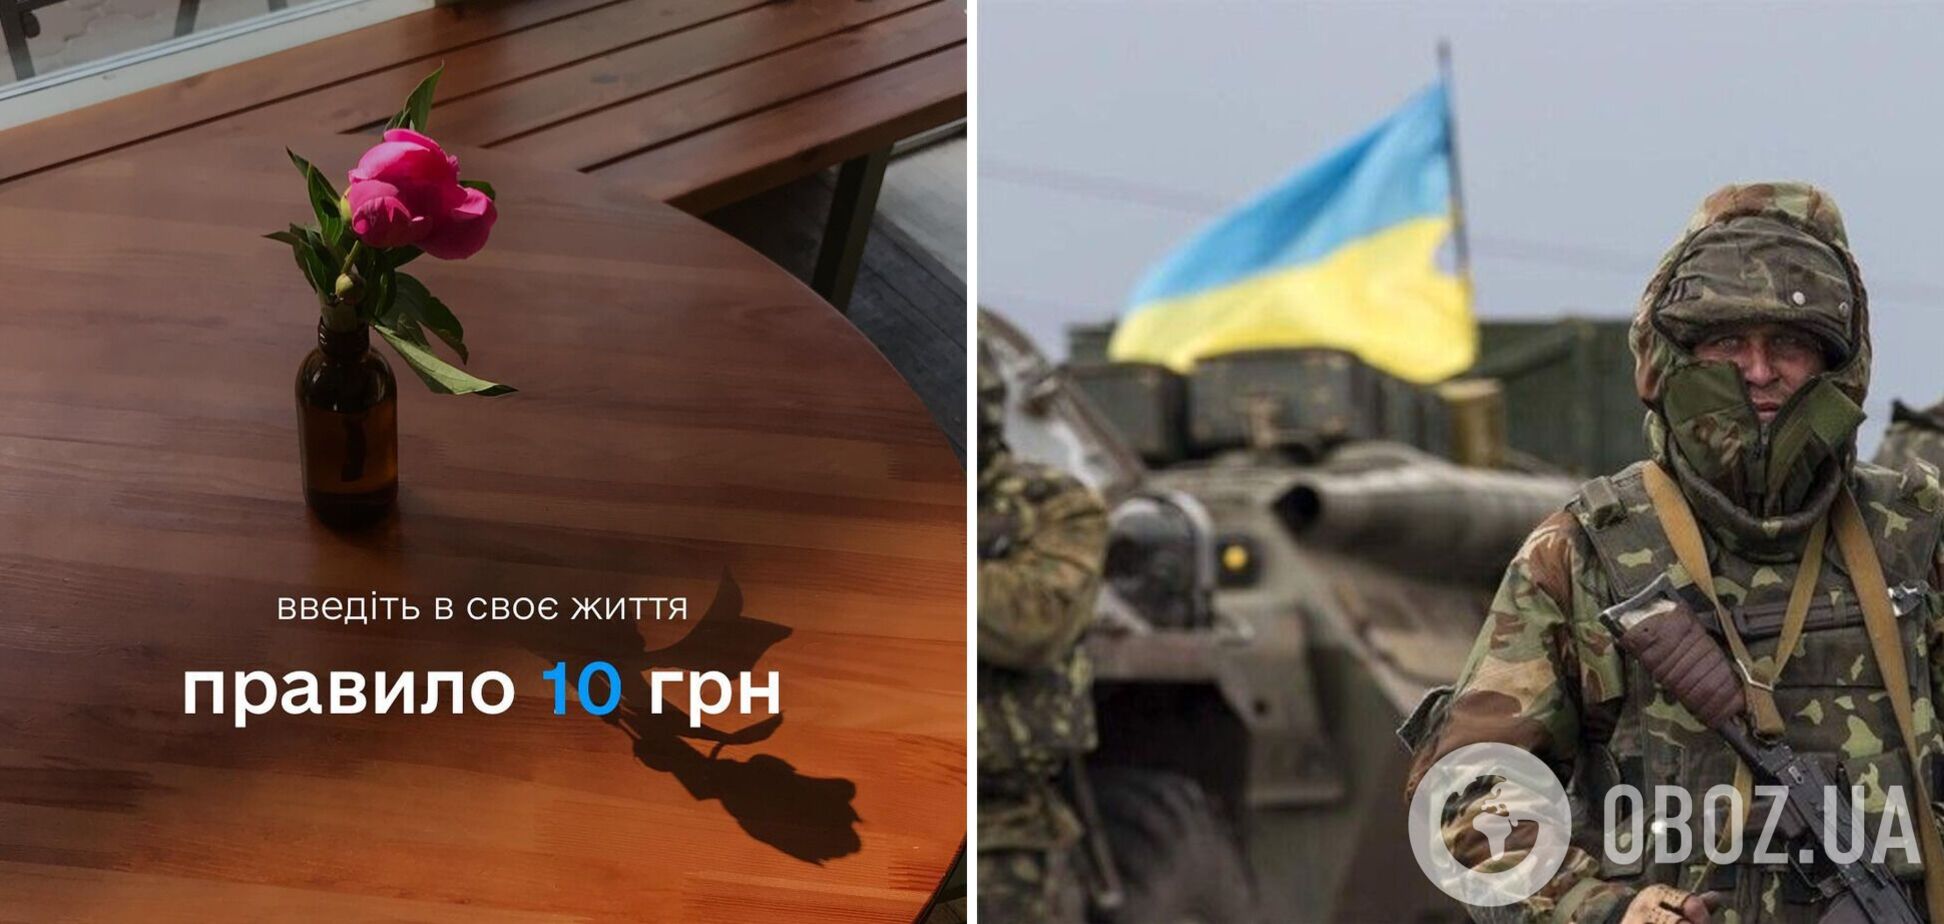 Правило 10 гривен захватило сеть: что это такое и как каждый может приблизить победу Украины